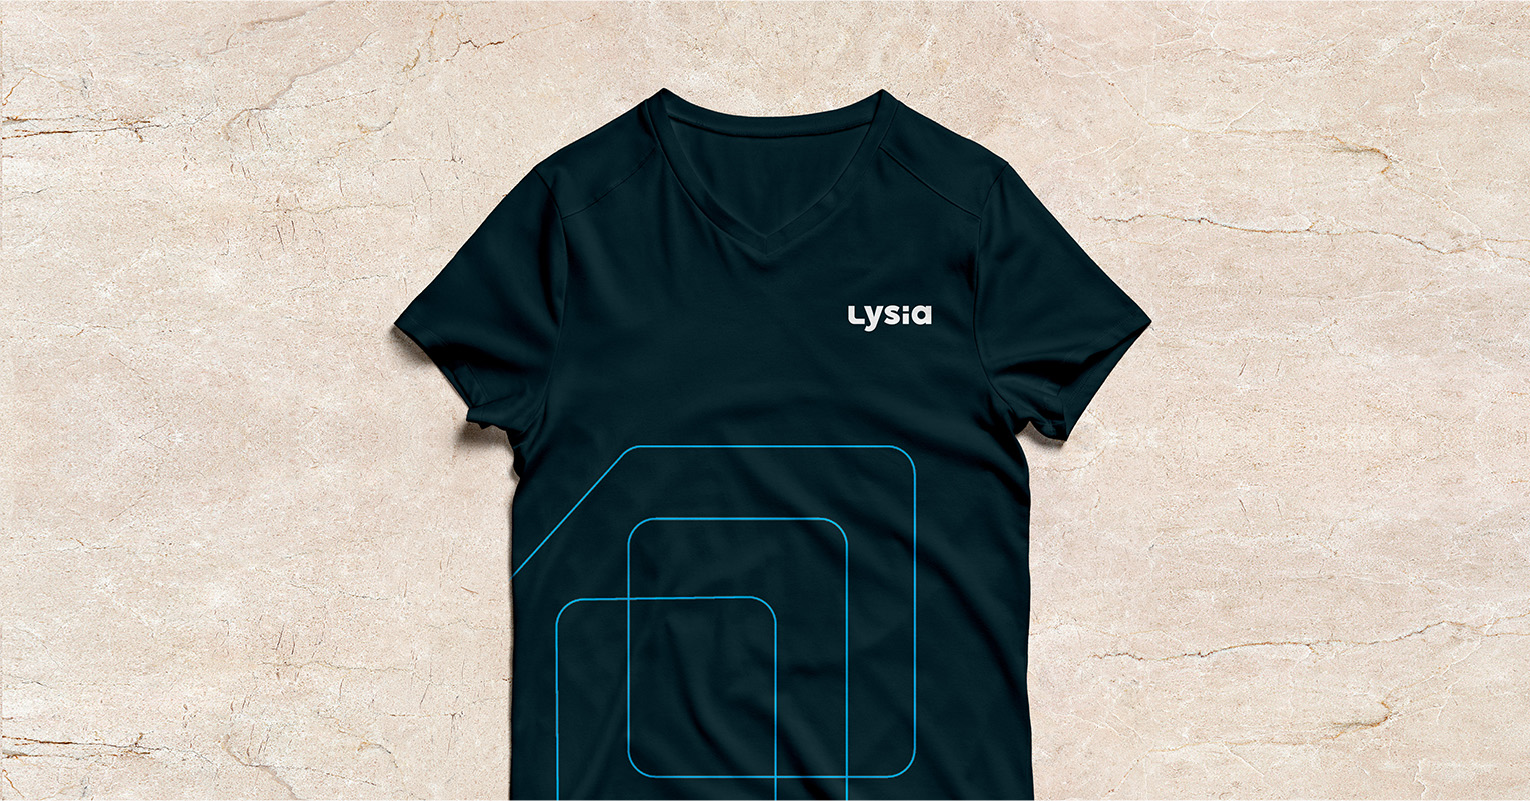 Les supports de communications réalisés pour Lysia